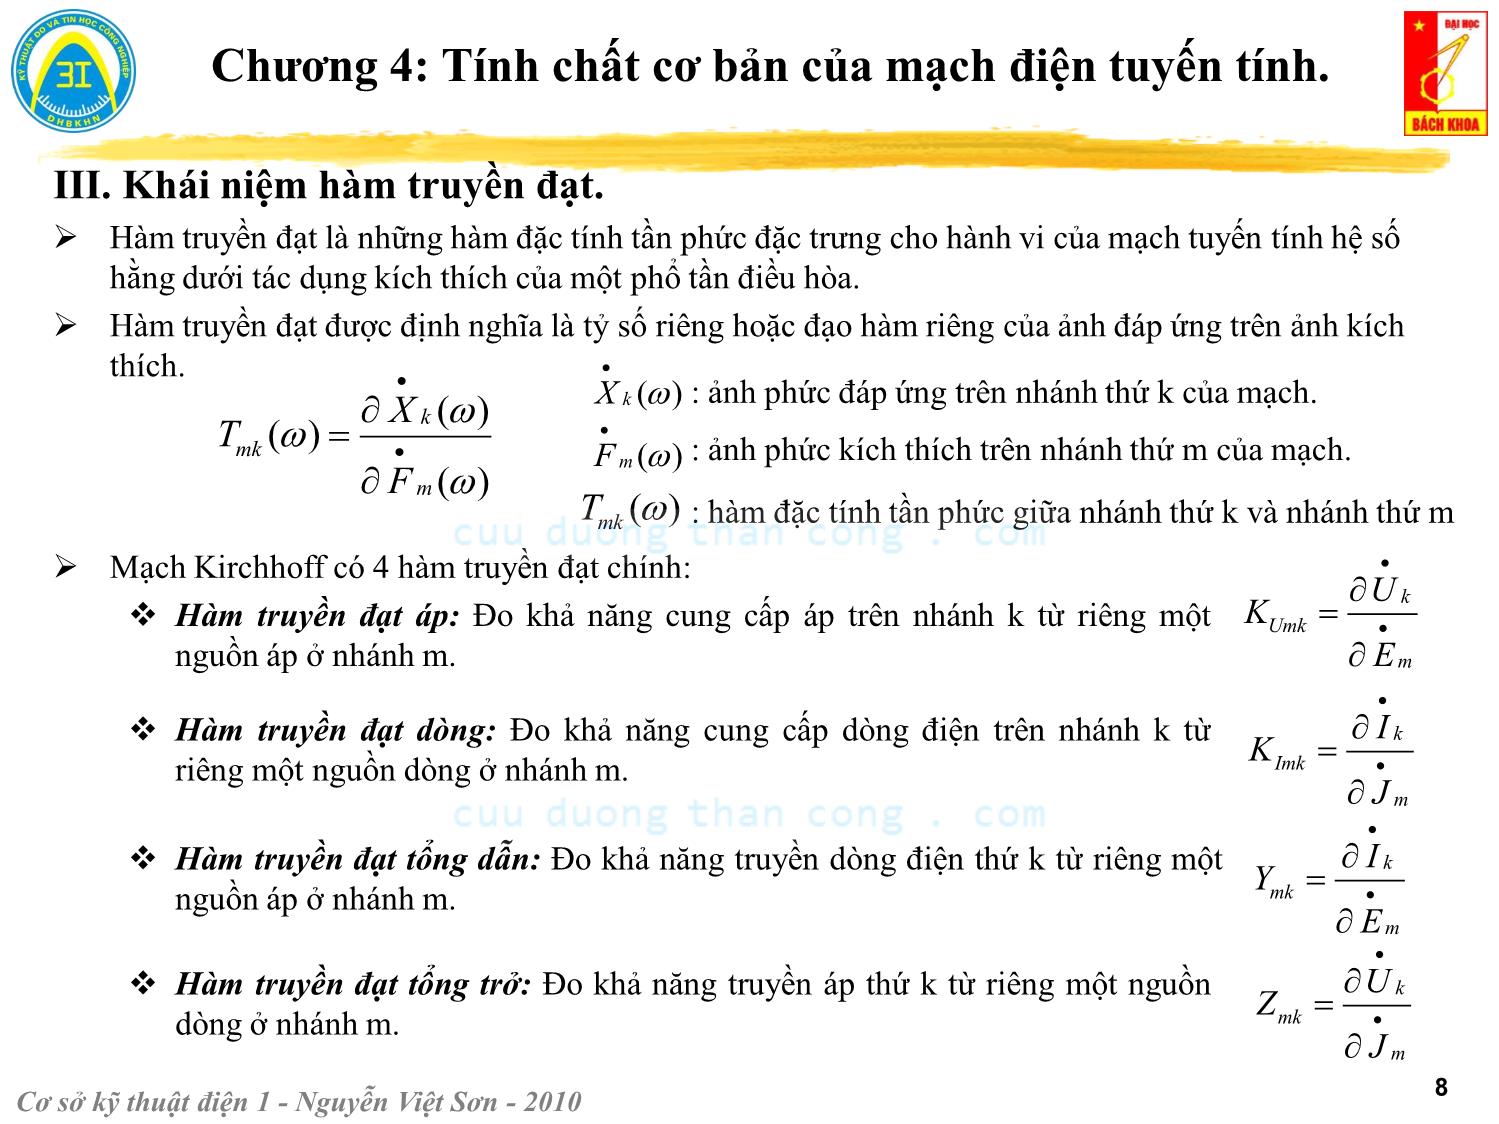 Bài giảng Kỹ thuật điện 1 - Chương 4: Tính chất cơ bản của mạch điện tuyến tính - Nguyễn Việt Sơn trang 8